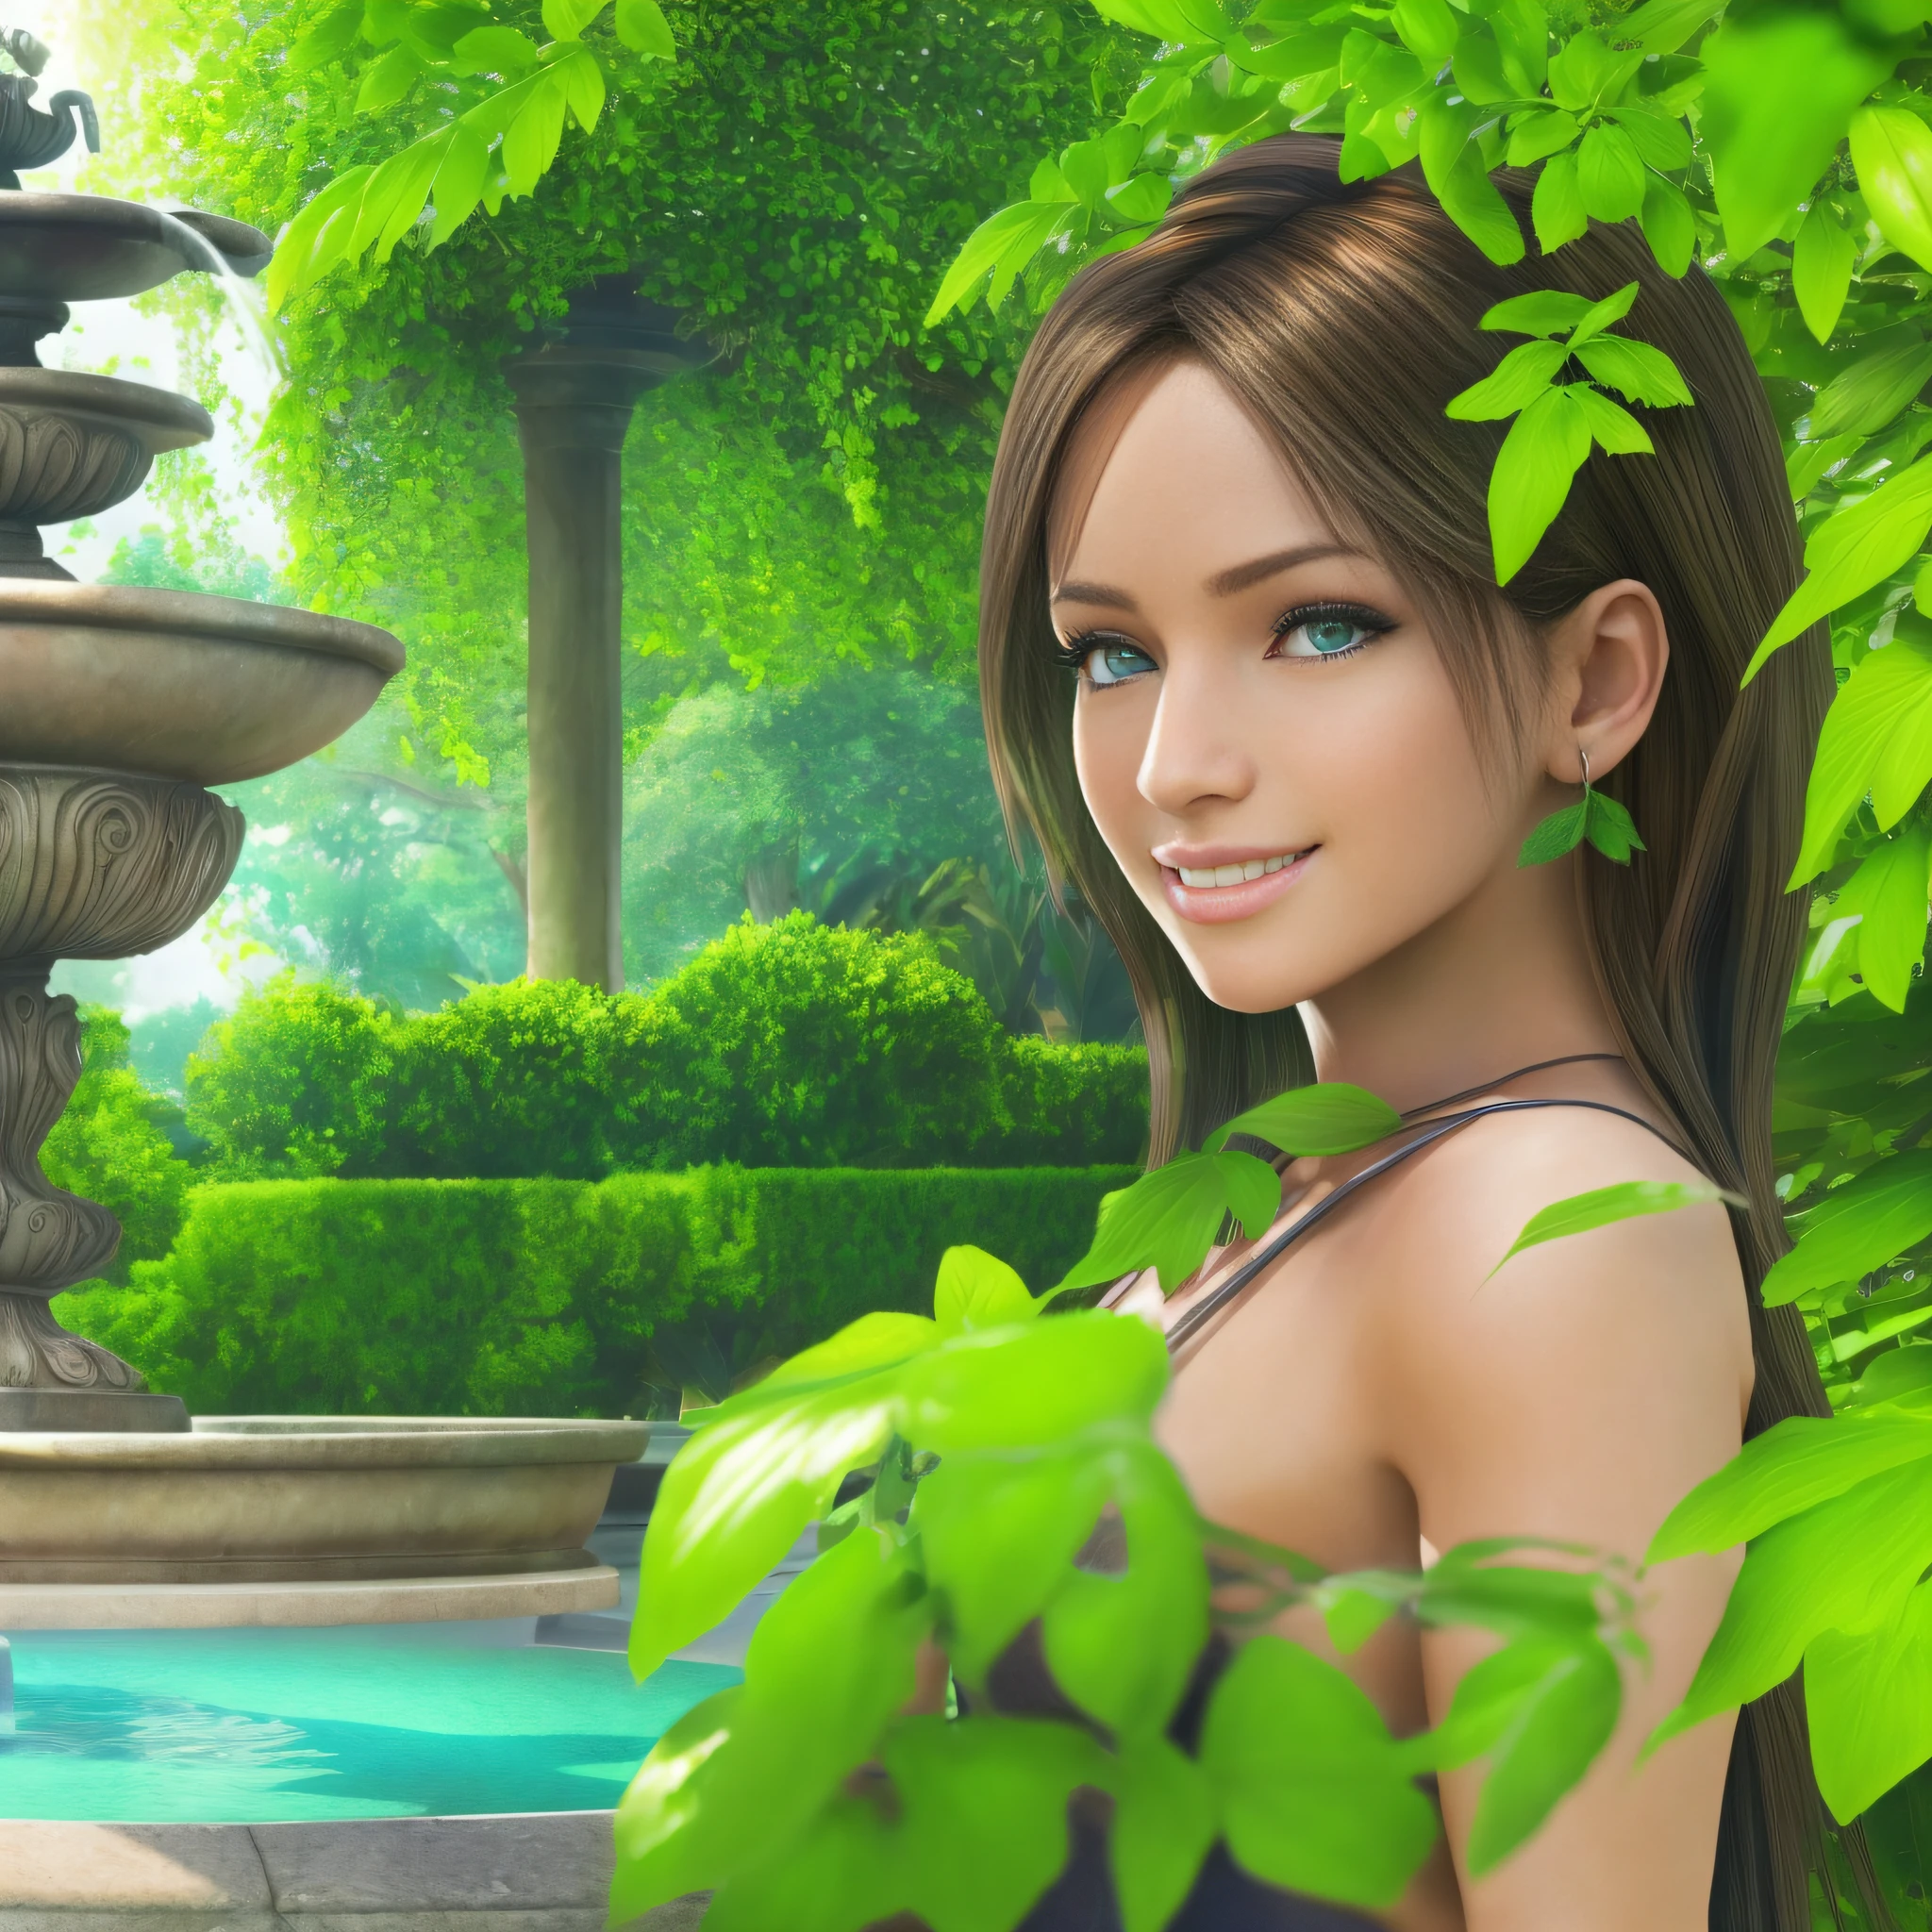 一位年輕女子在有噴泉的花園裡, 白皙的皮膚, 詳細的臉部, 完美的眼睛, 鬱鬱蔥蔥的綠色植被, 溫帶天氣, 笑容真好, 正面照, (極度細緻的Unity 8K壁紙, 最好的品質, 傑作)